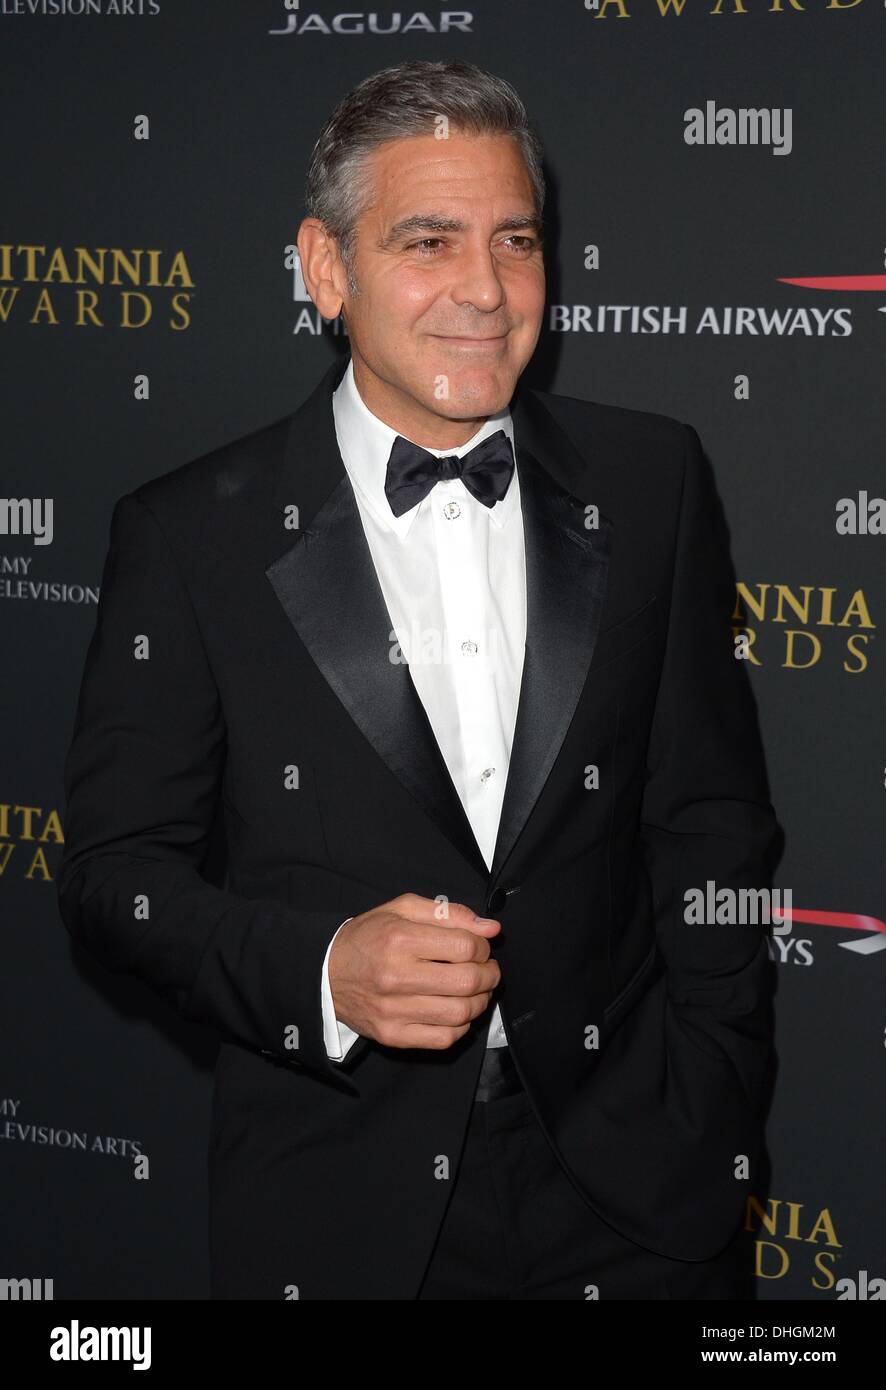 George Clooney arrive à la remise des prix de la BAFTA Britannia à Los Angeles, Californie, le 9 novembre 2013 Banque D'Images